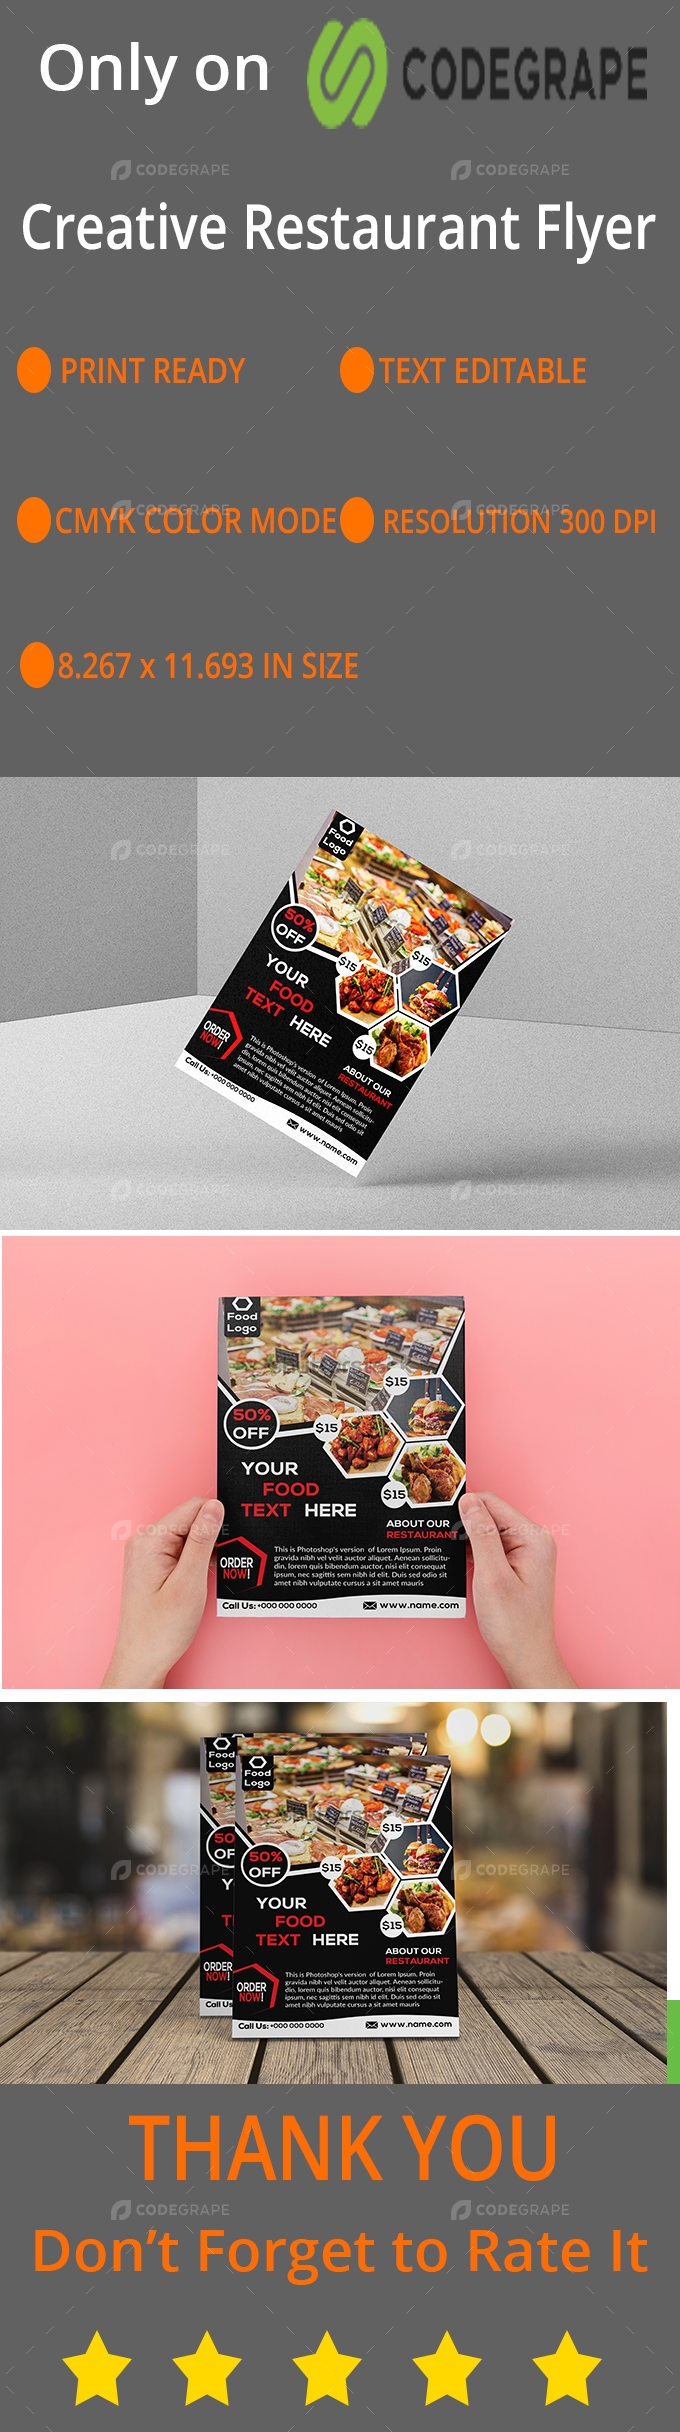 Creative Restaurant Flyer Design